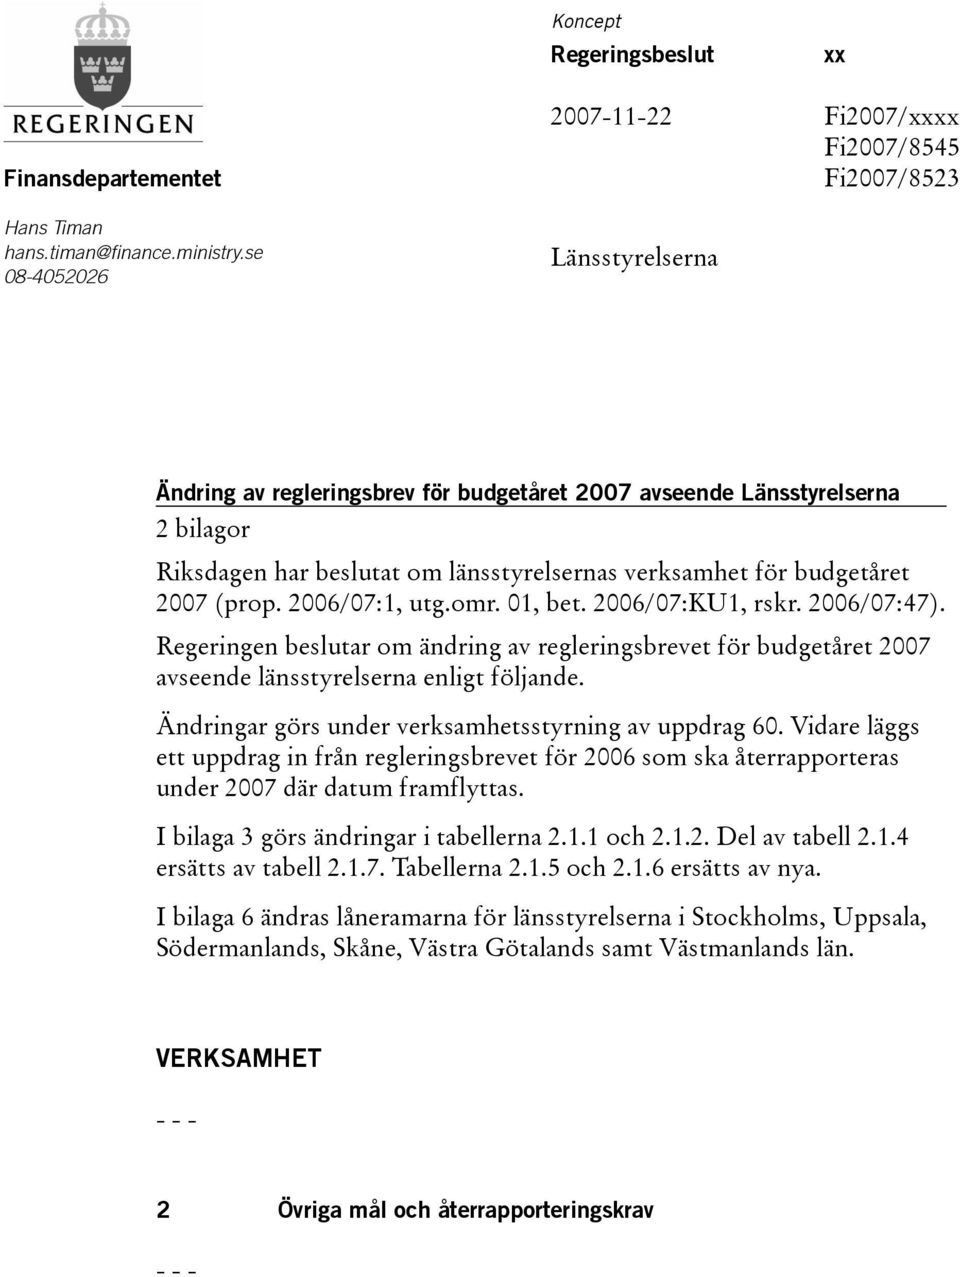 länsstyrelsernas verksamhet för budgetåret 2007 (prop. 2006/07:1, utg.omr. 01, bet. 2006/07:KU1, rskr. 2006/07:47).